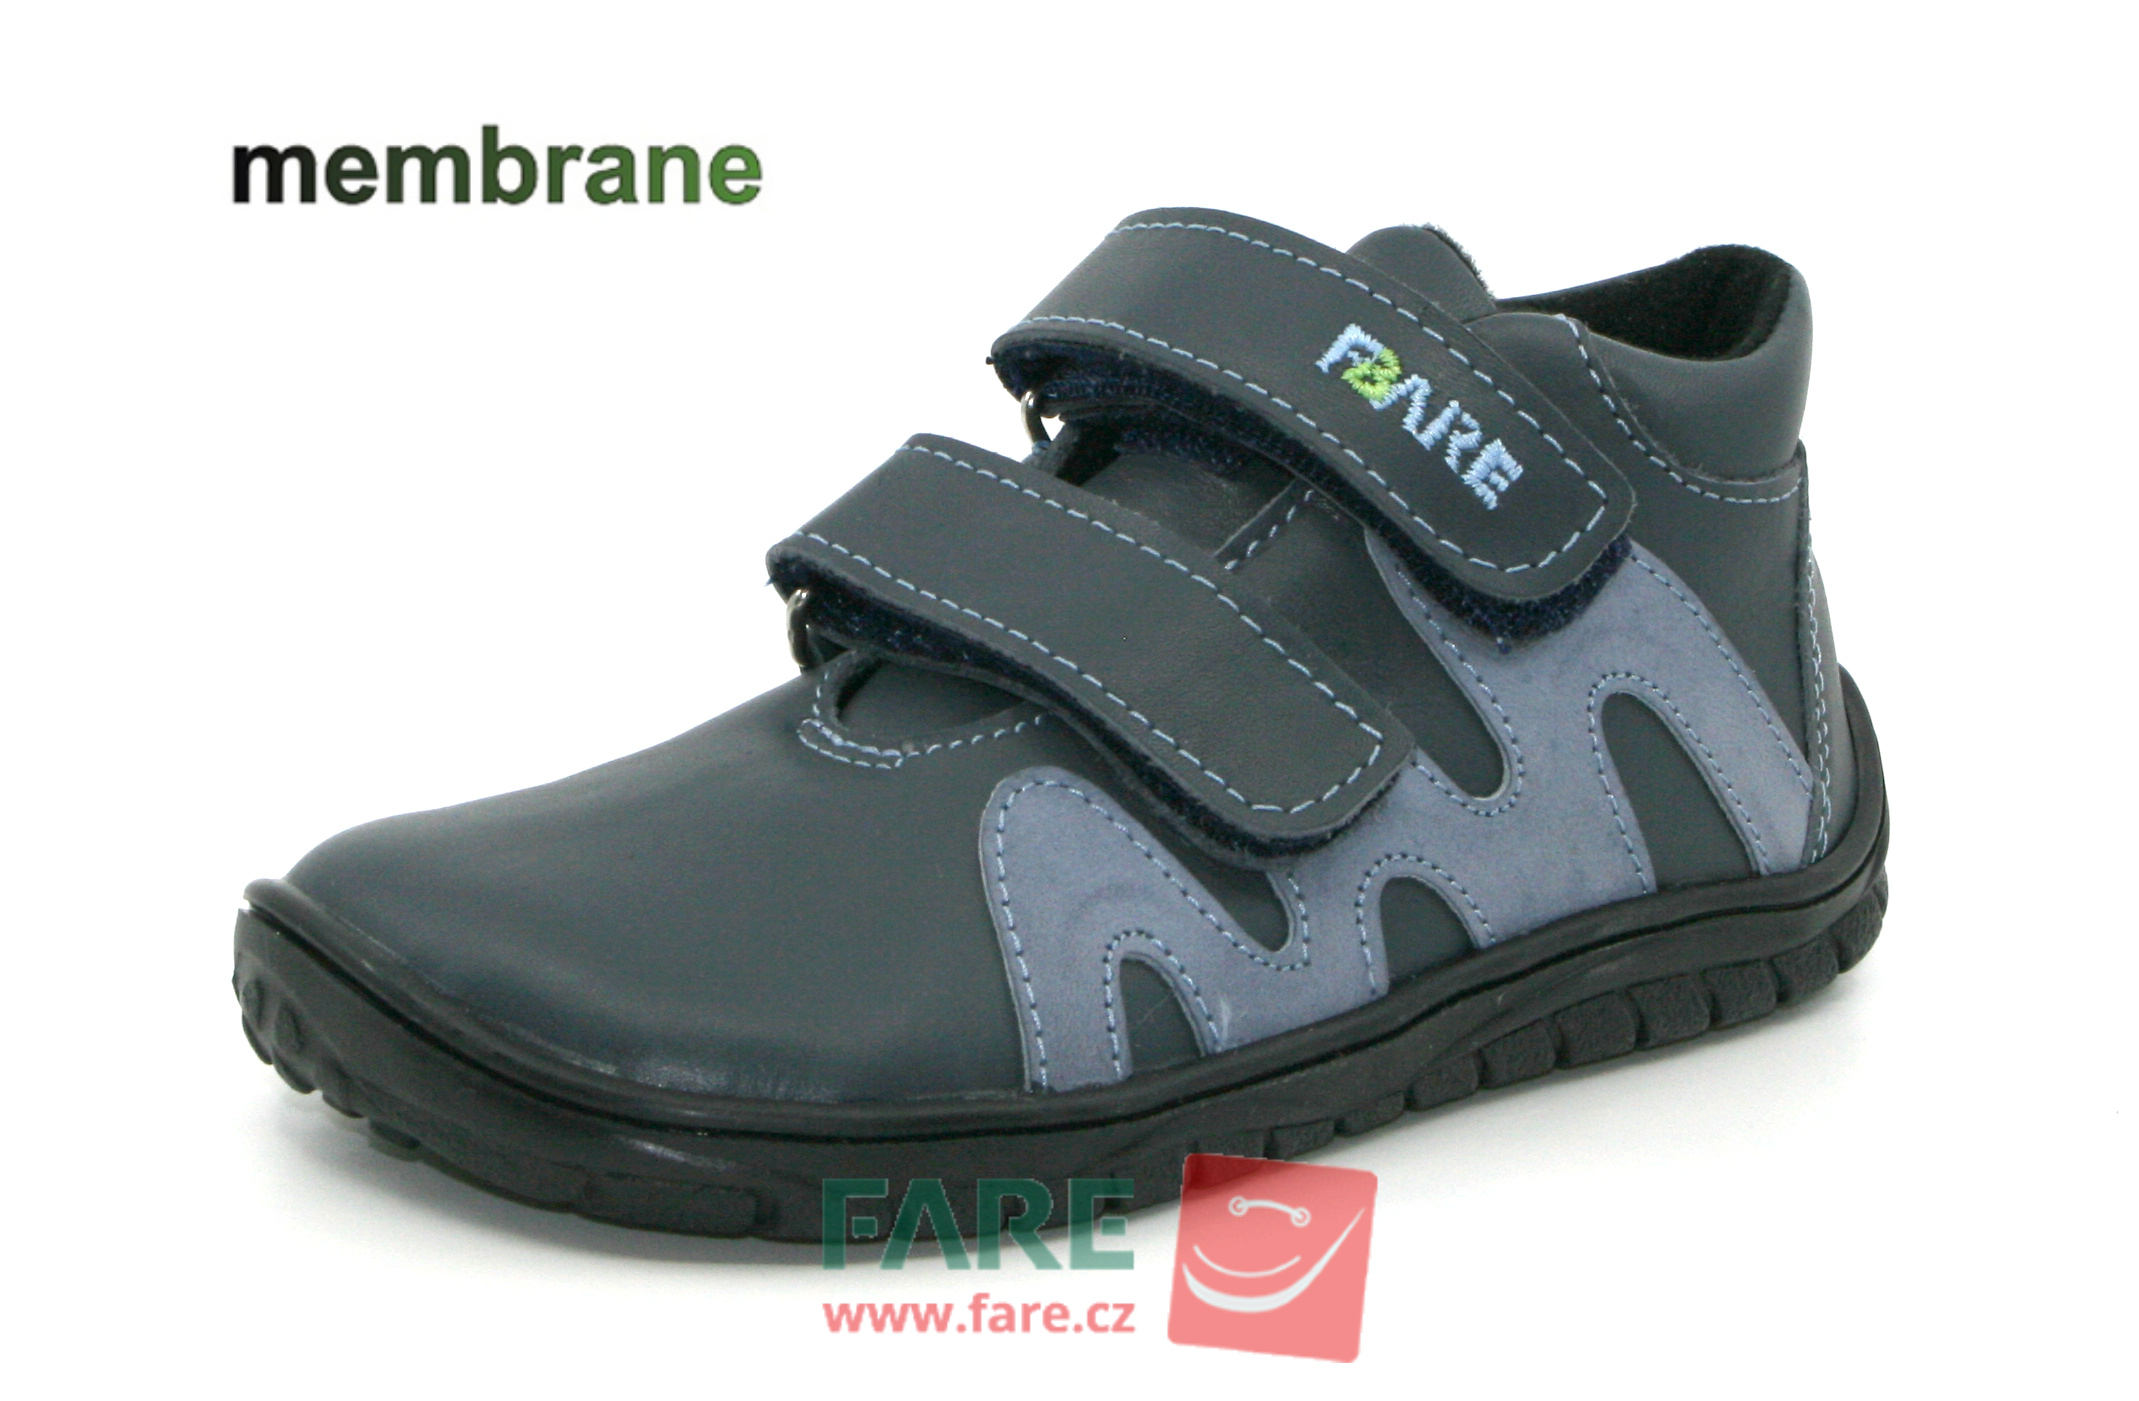 FARE BARE celoroční boty s membránou B5516161 Velikost obuvi: 32